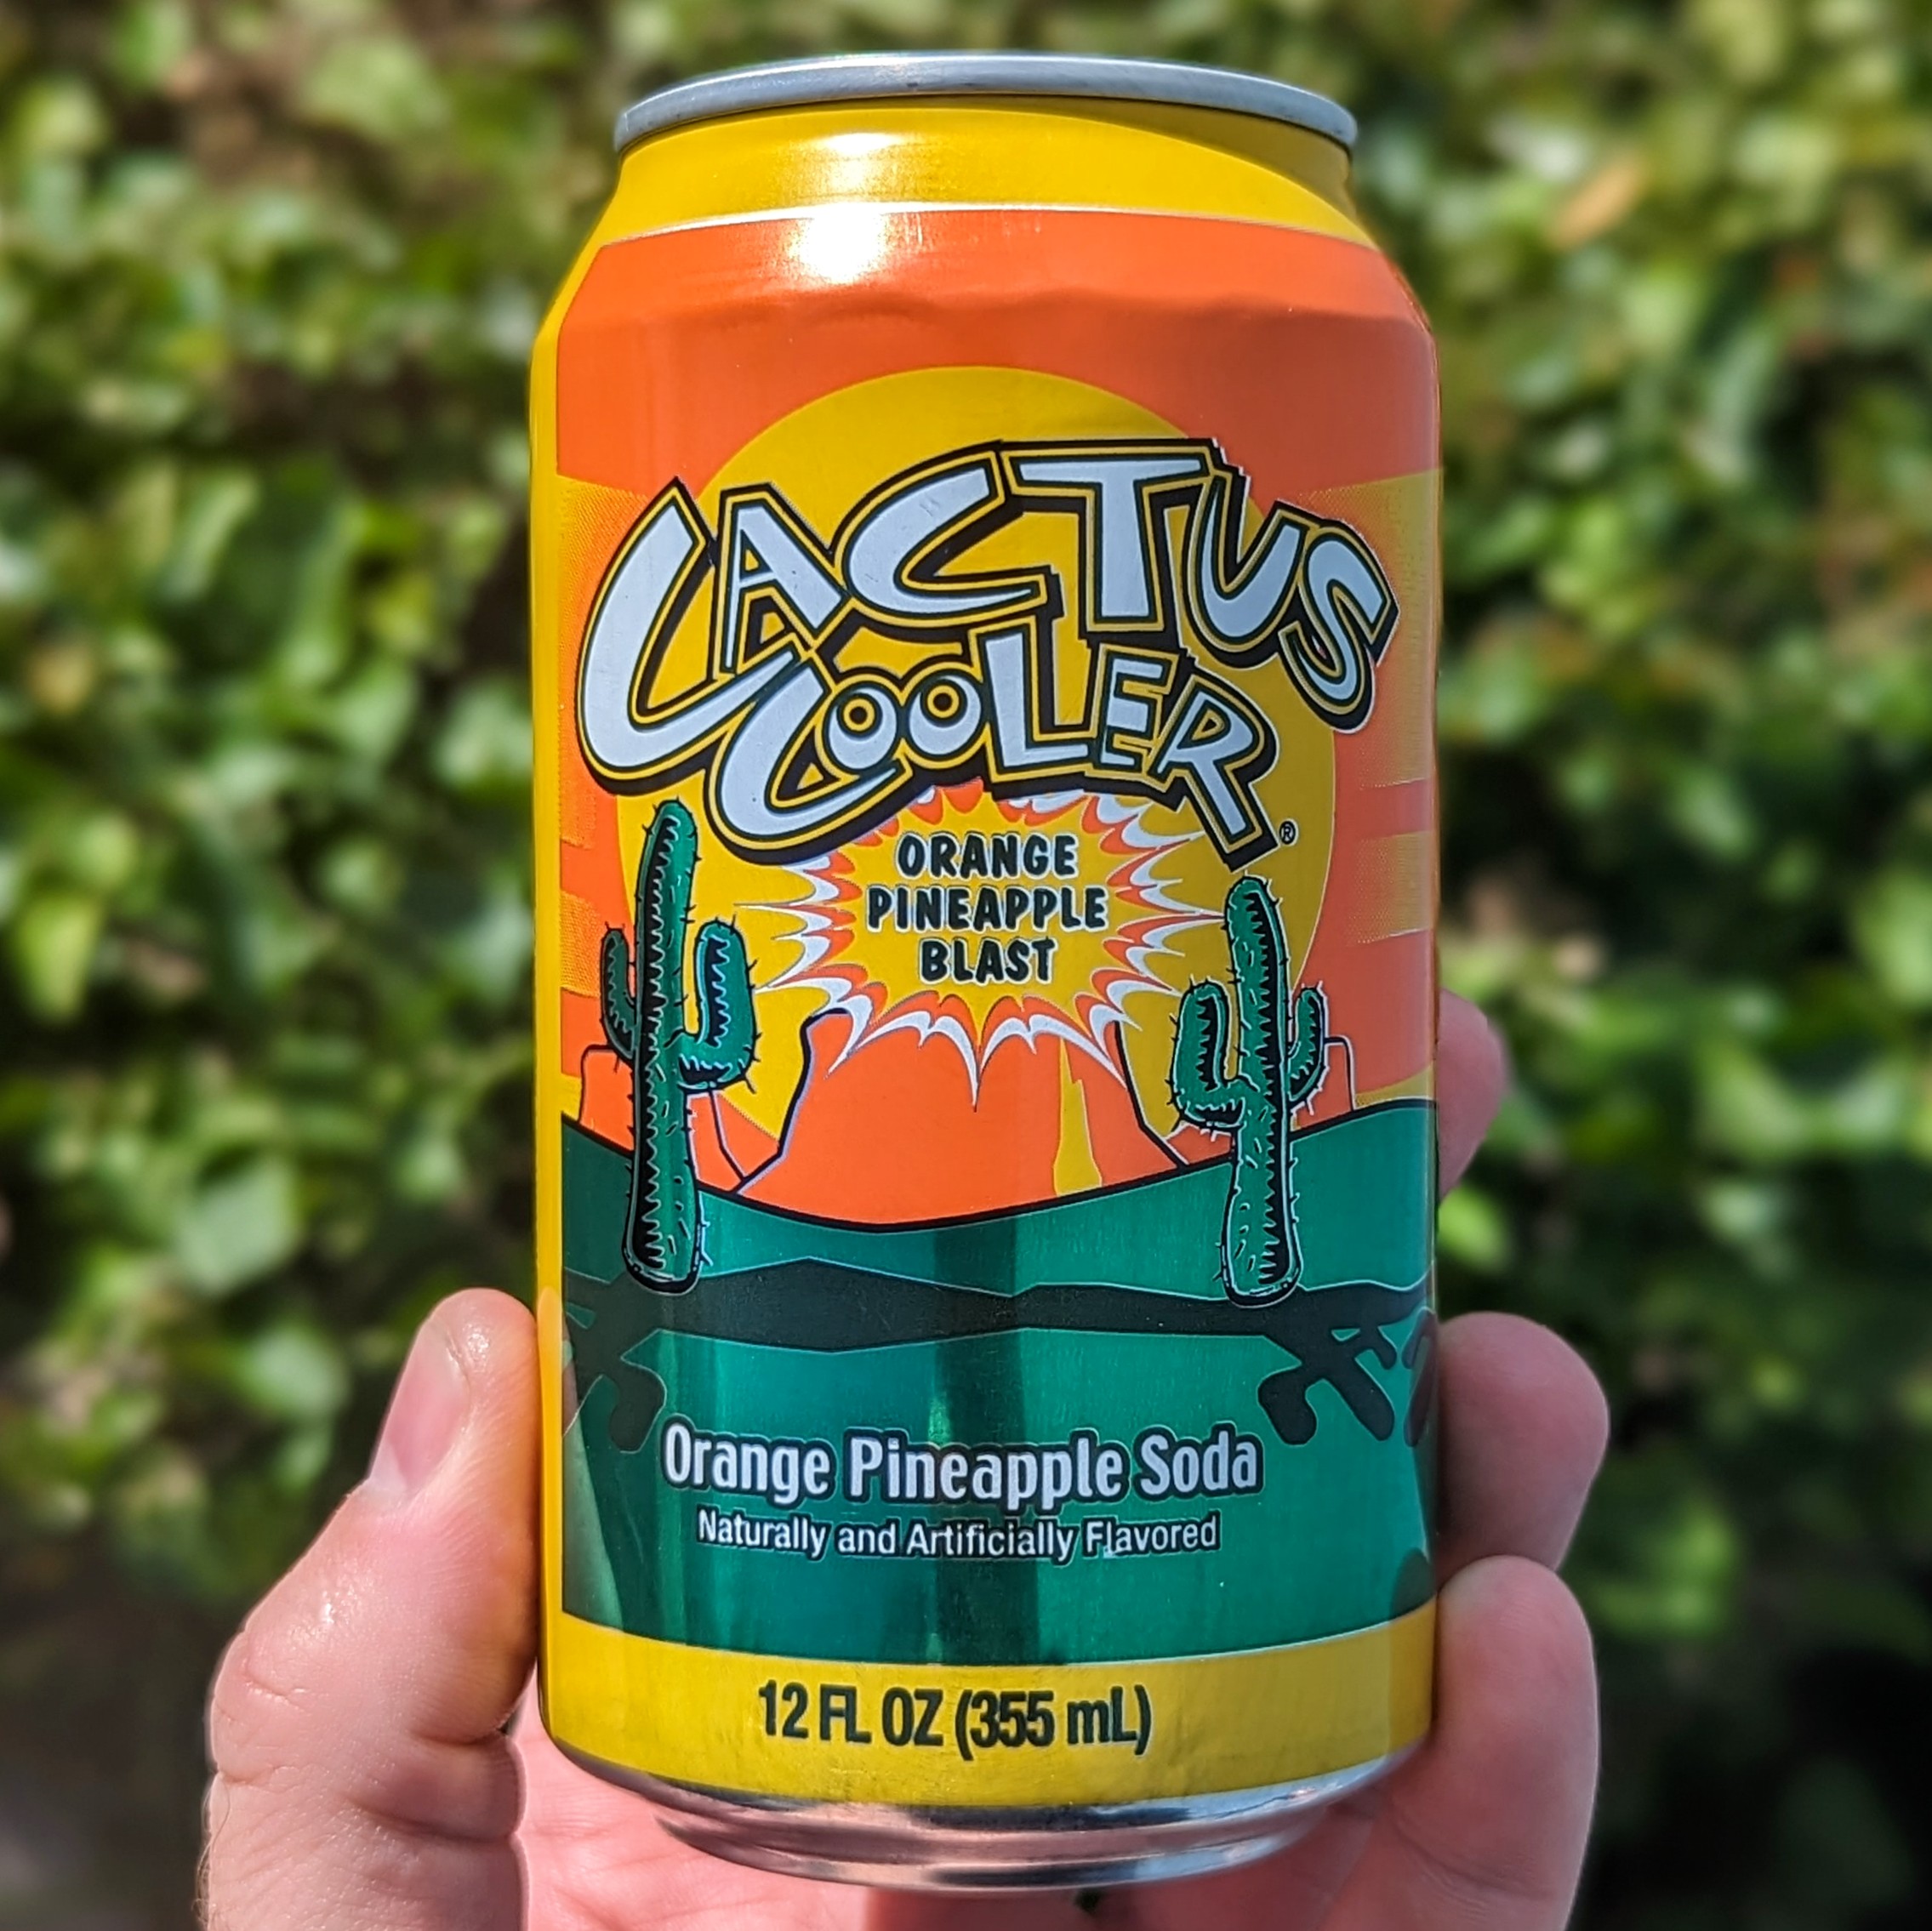 cactus cooler